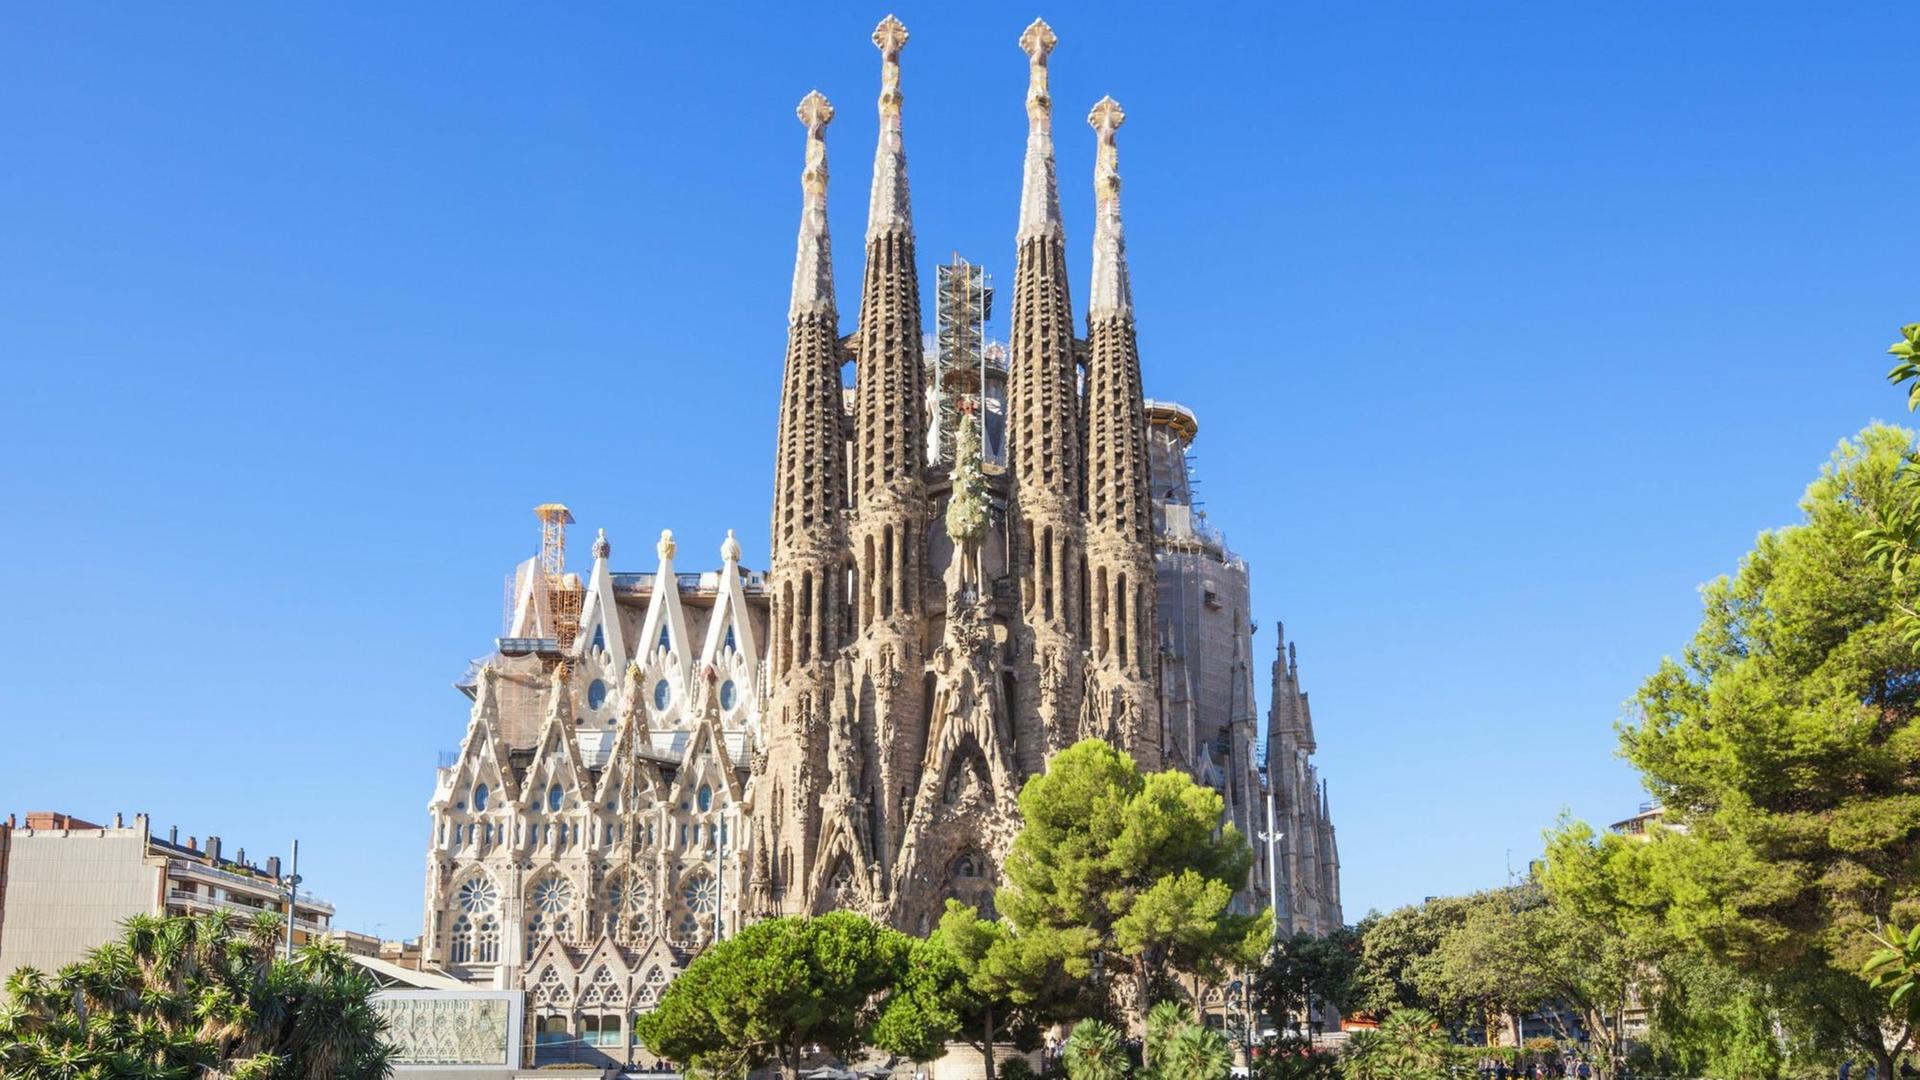 La Sagrada Familia in Barcelona